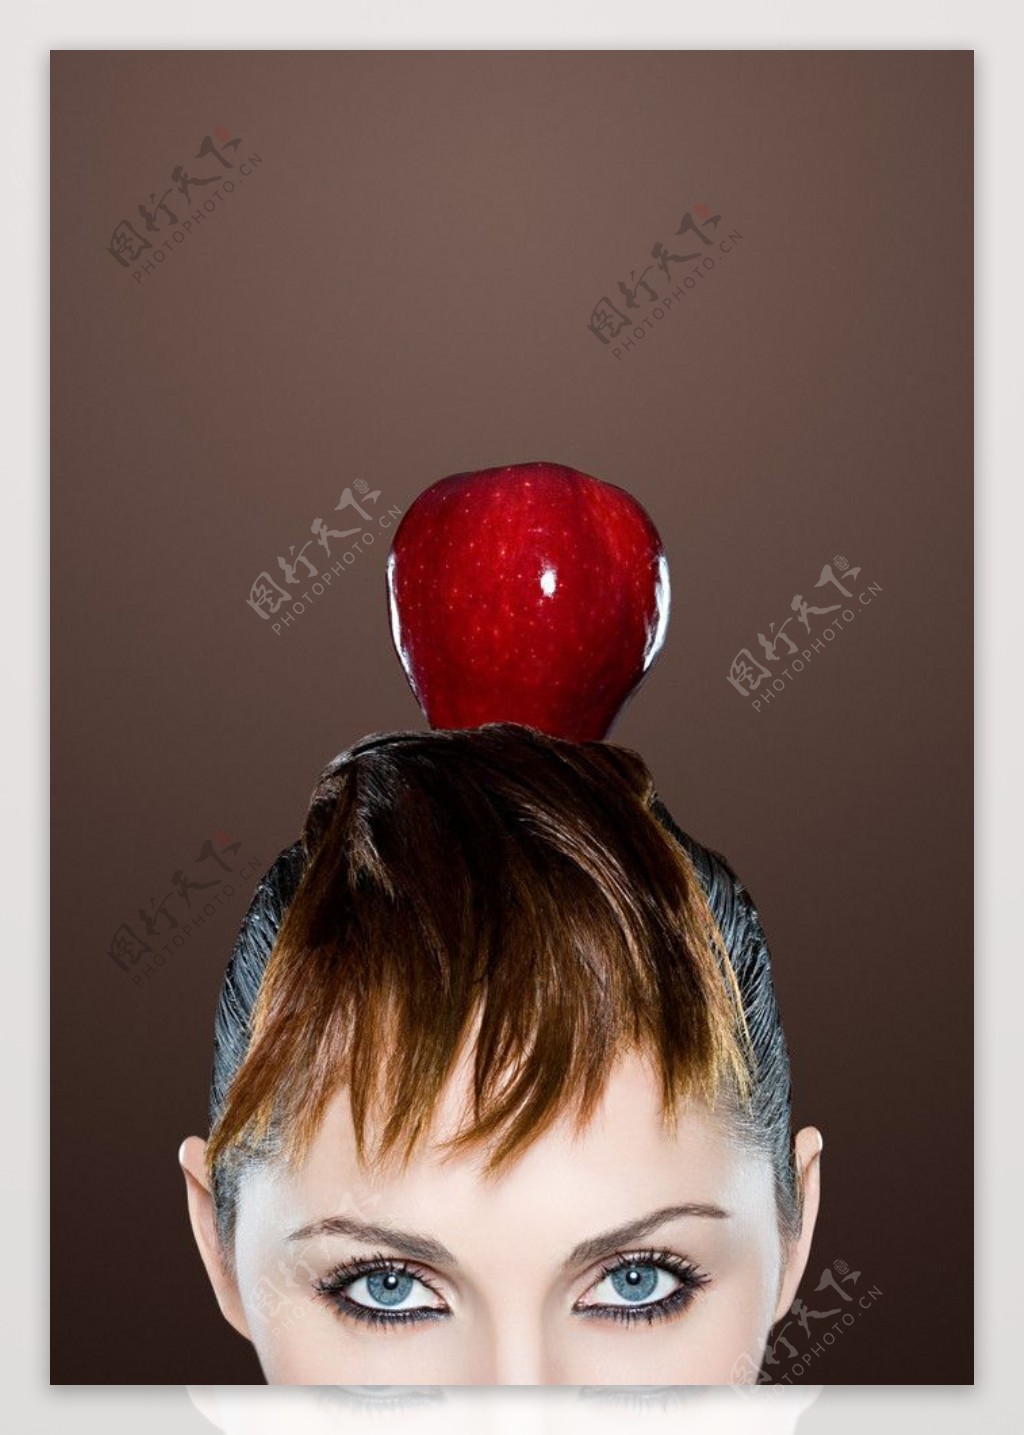 头上放着苹果的美女图片